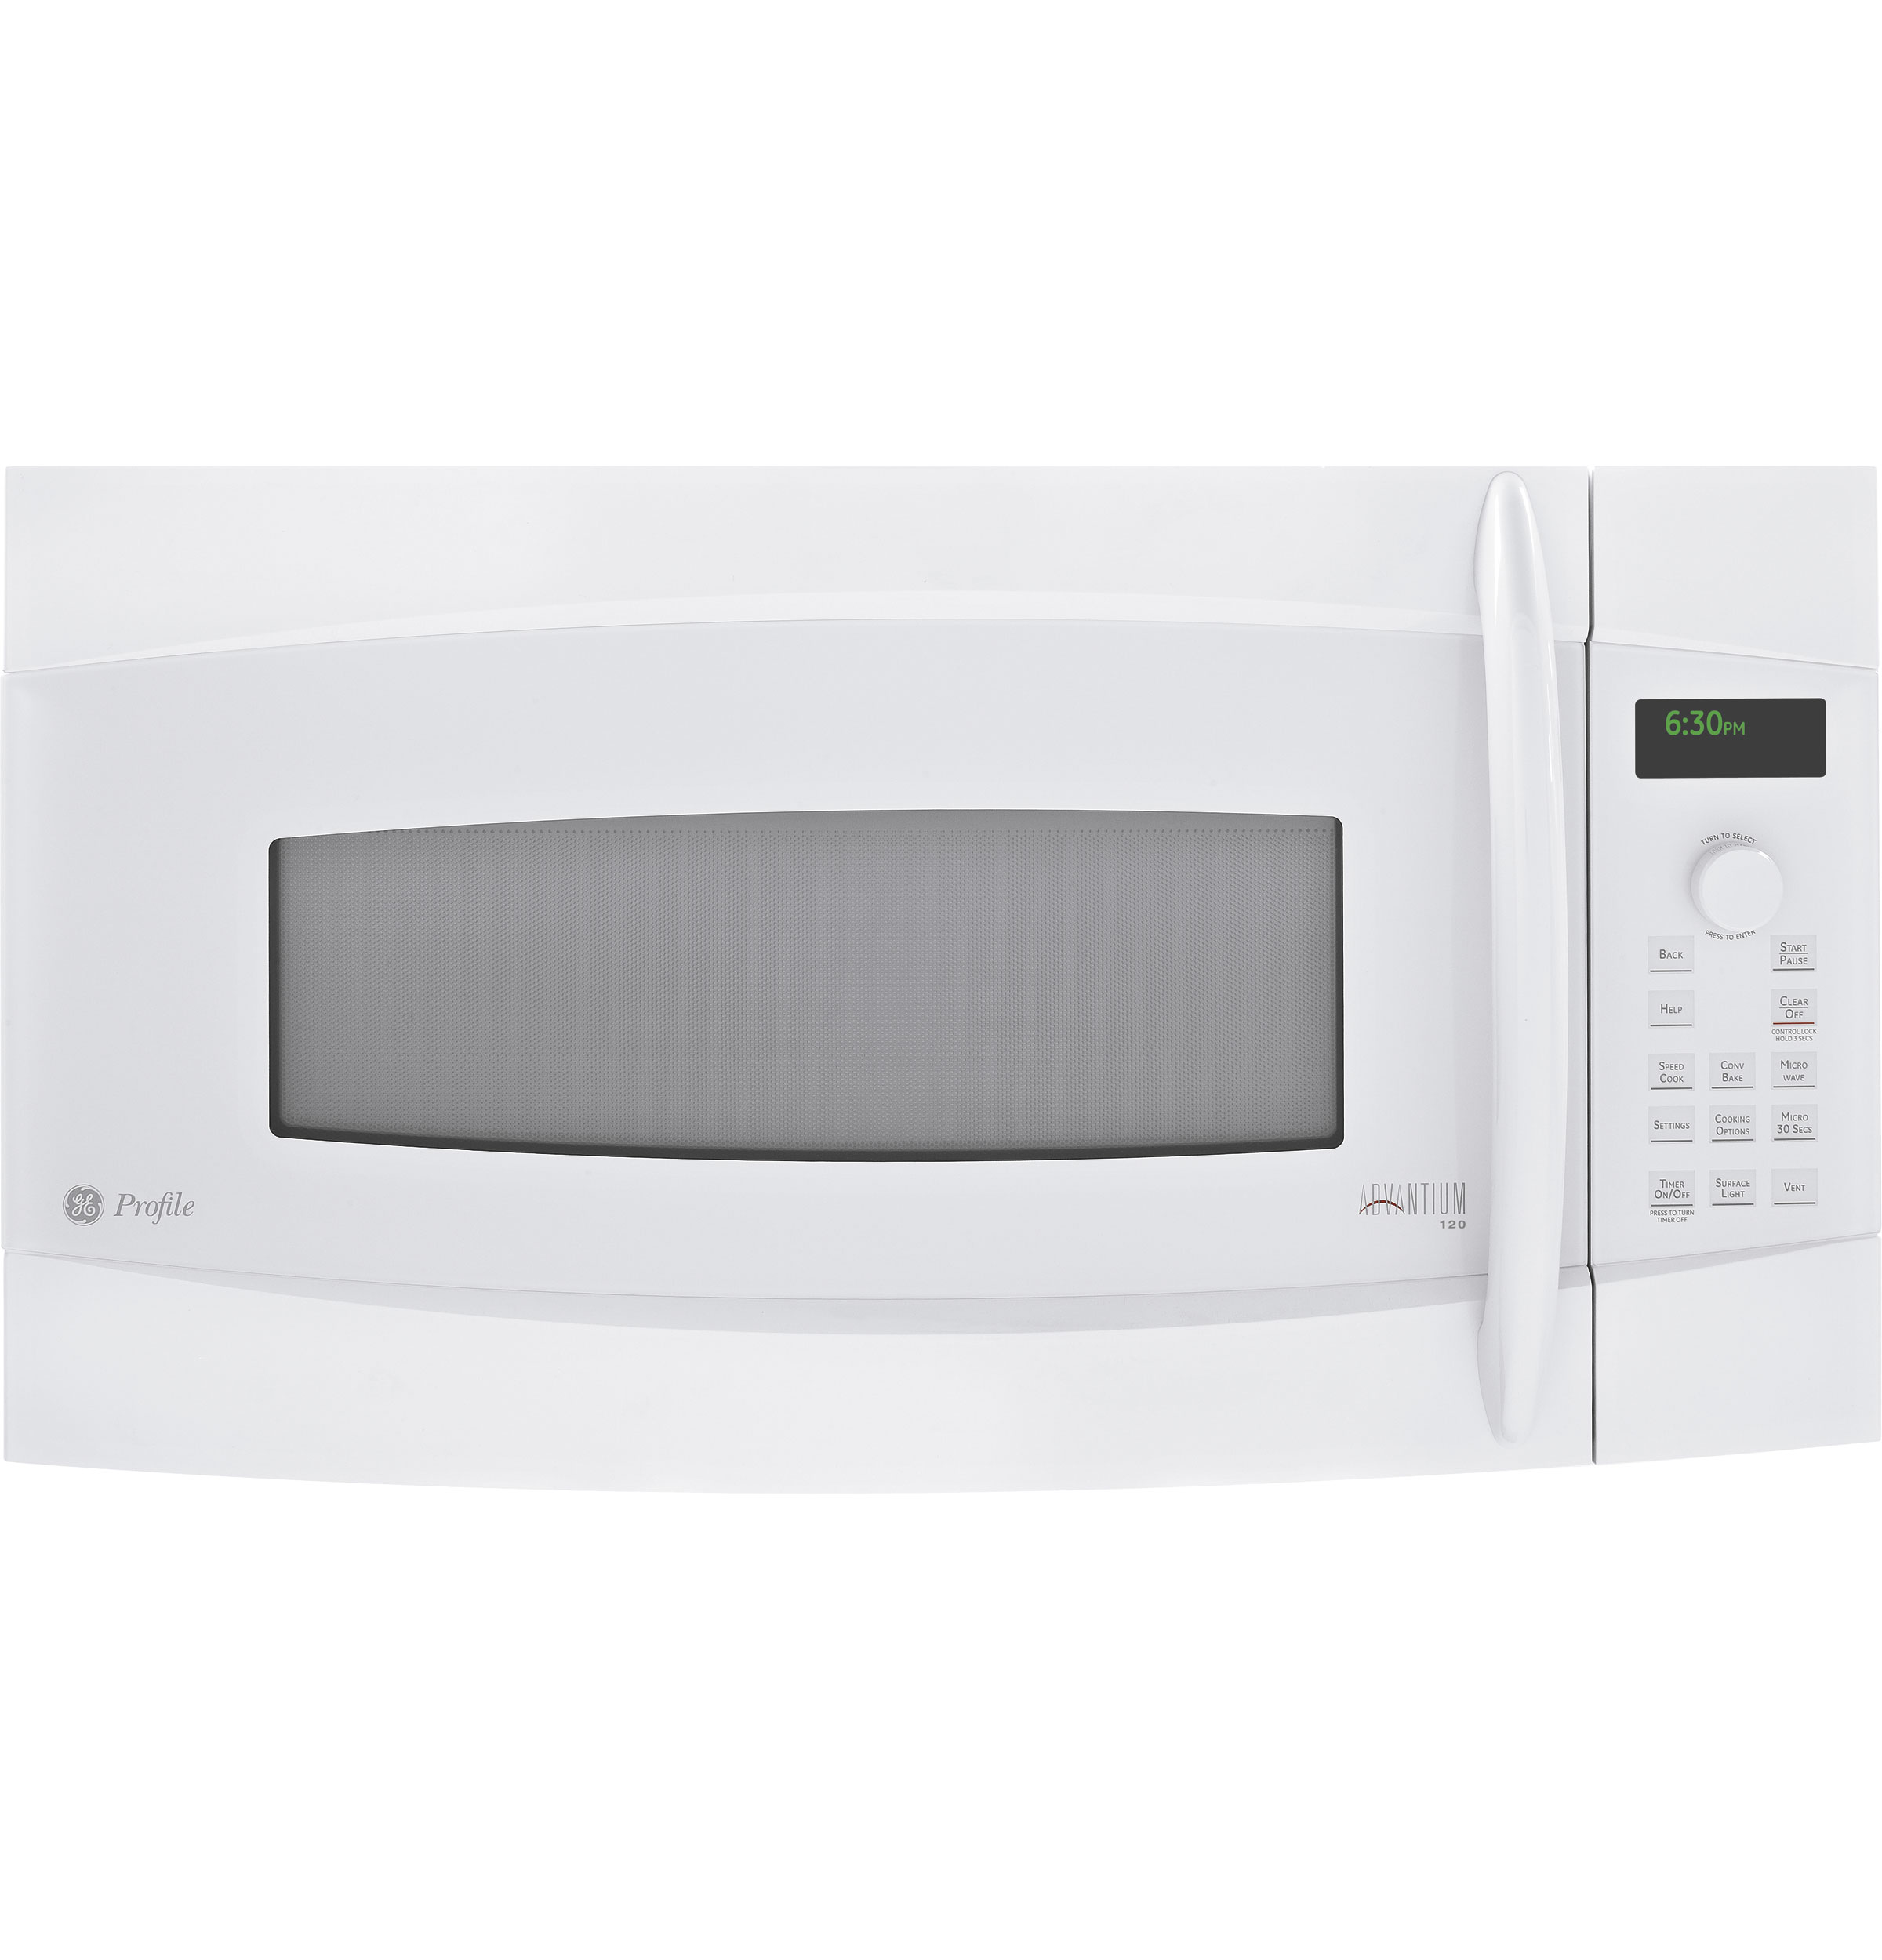 GE Profile Advantium® 120 Above-the-Cooktop Oven